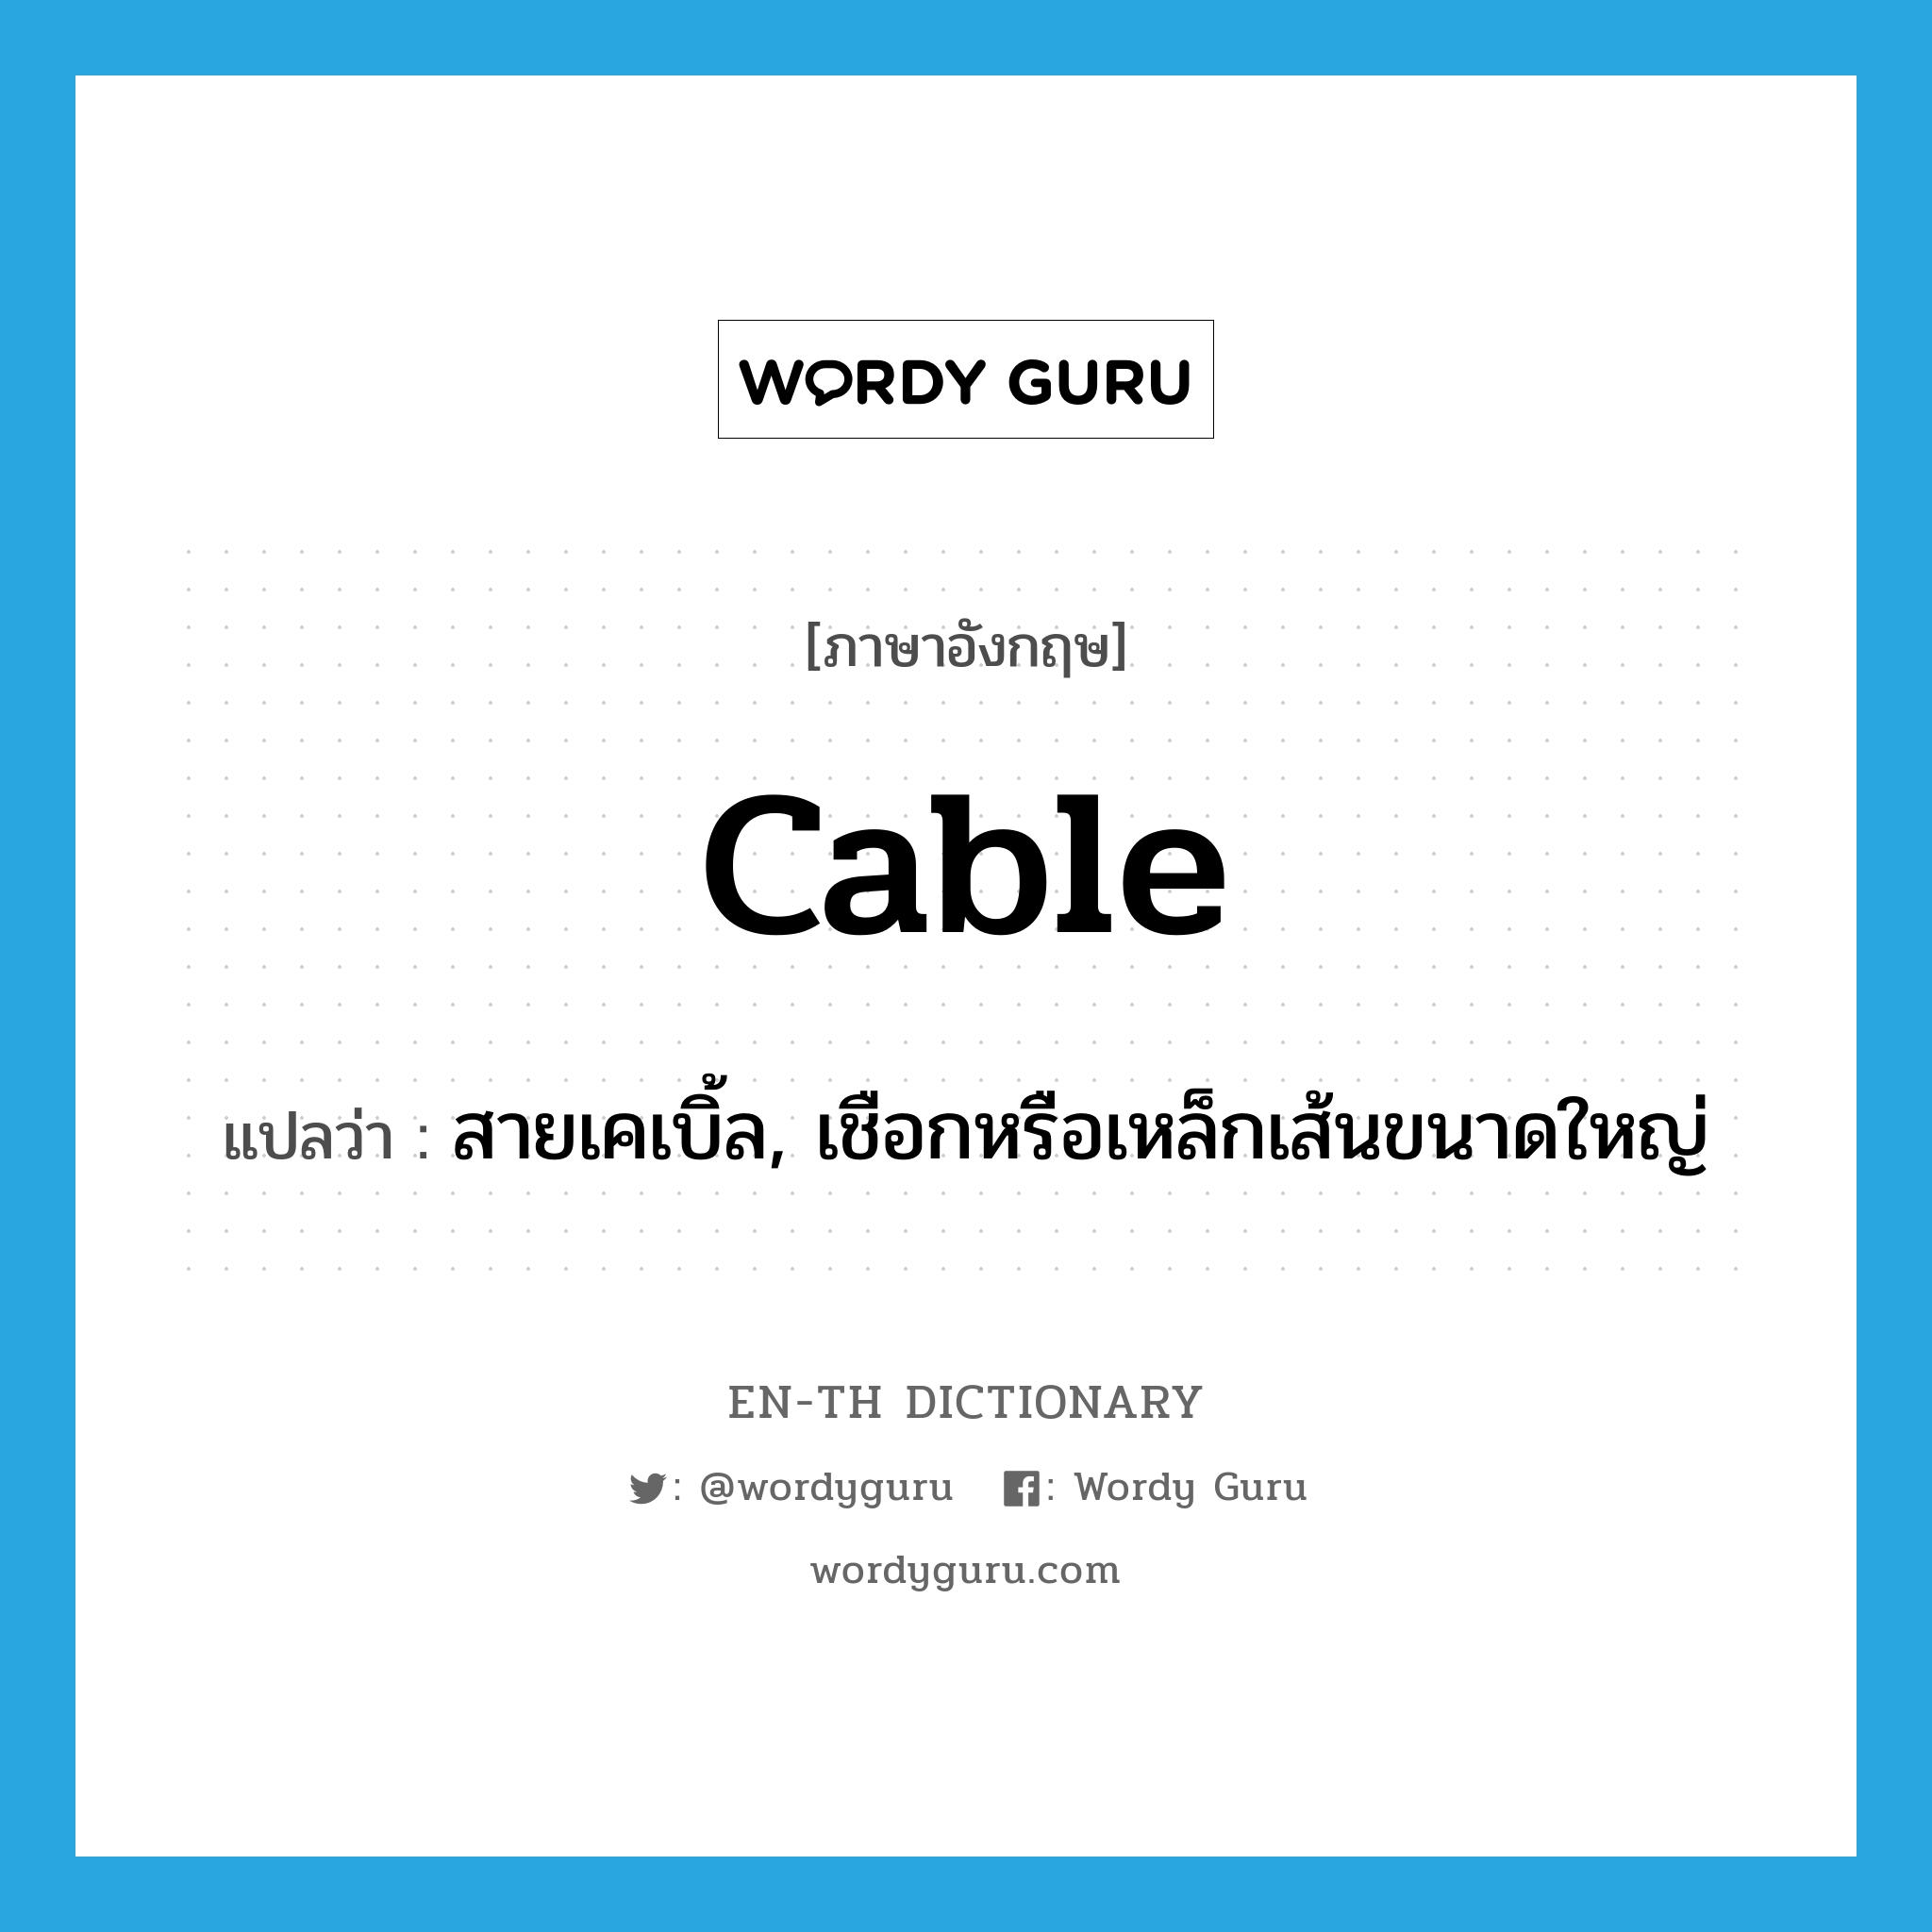 cable แปลว่า?, คำศัพท์ภาษาอังกฤษ cable แปลว่า สายเคเบิ้ล, เชือกหรือเหล็กเส้นขนาดใหญ่ ประเภท N หมวด N